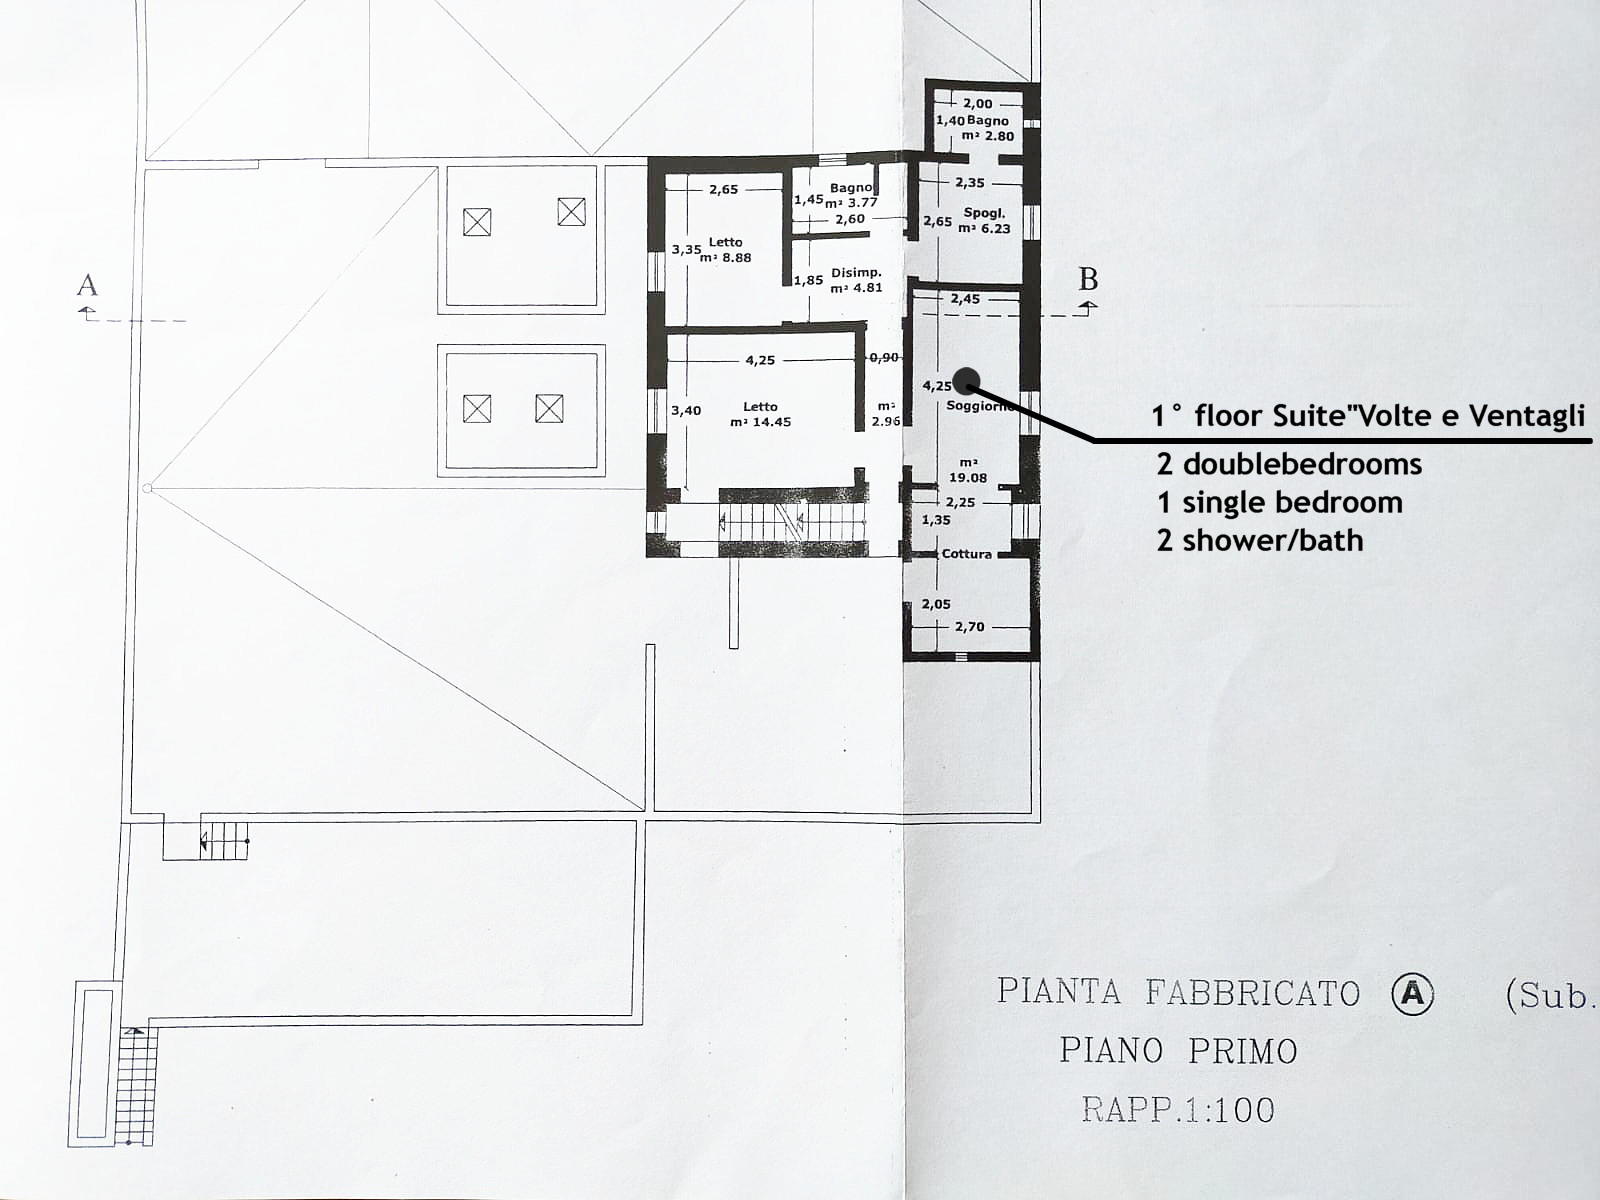 Main Building A - first floor plan